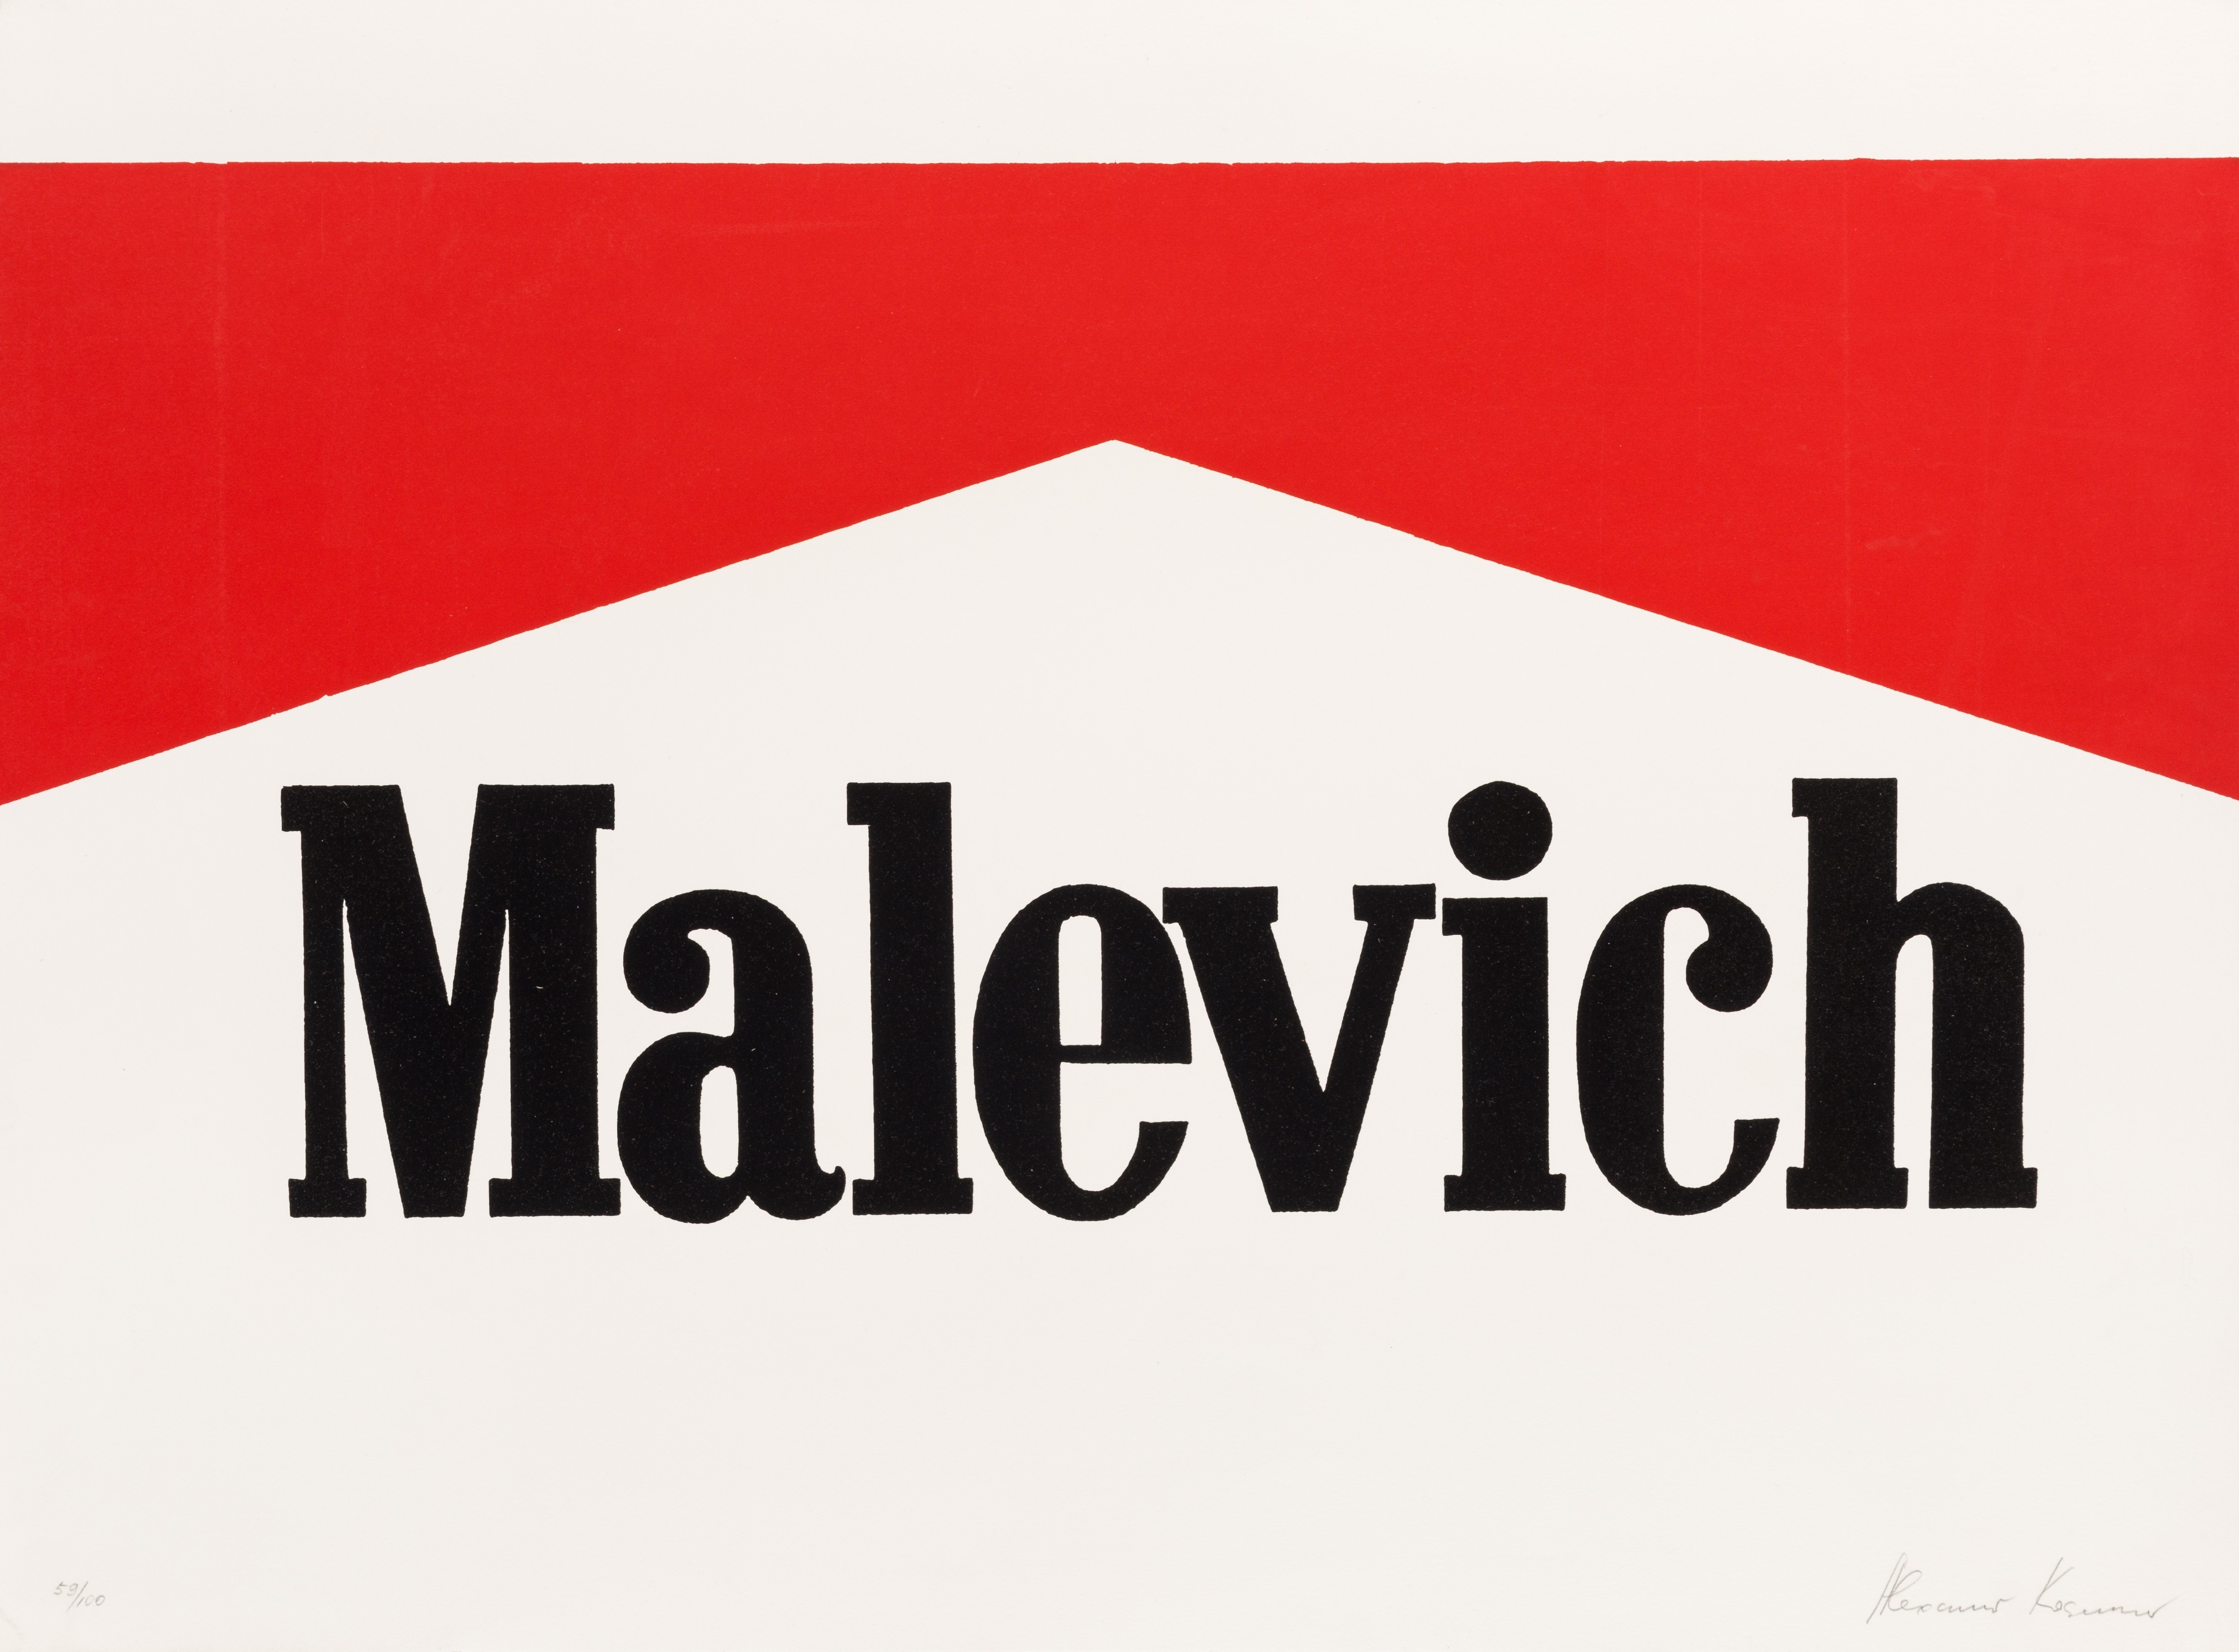 Malevich by Alexander Kosolapov, circa 1990